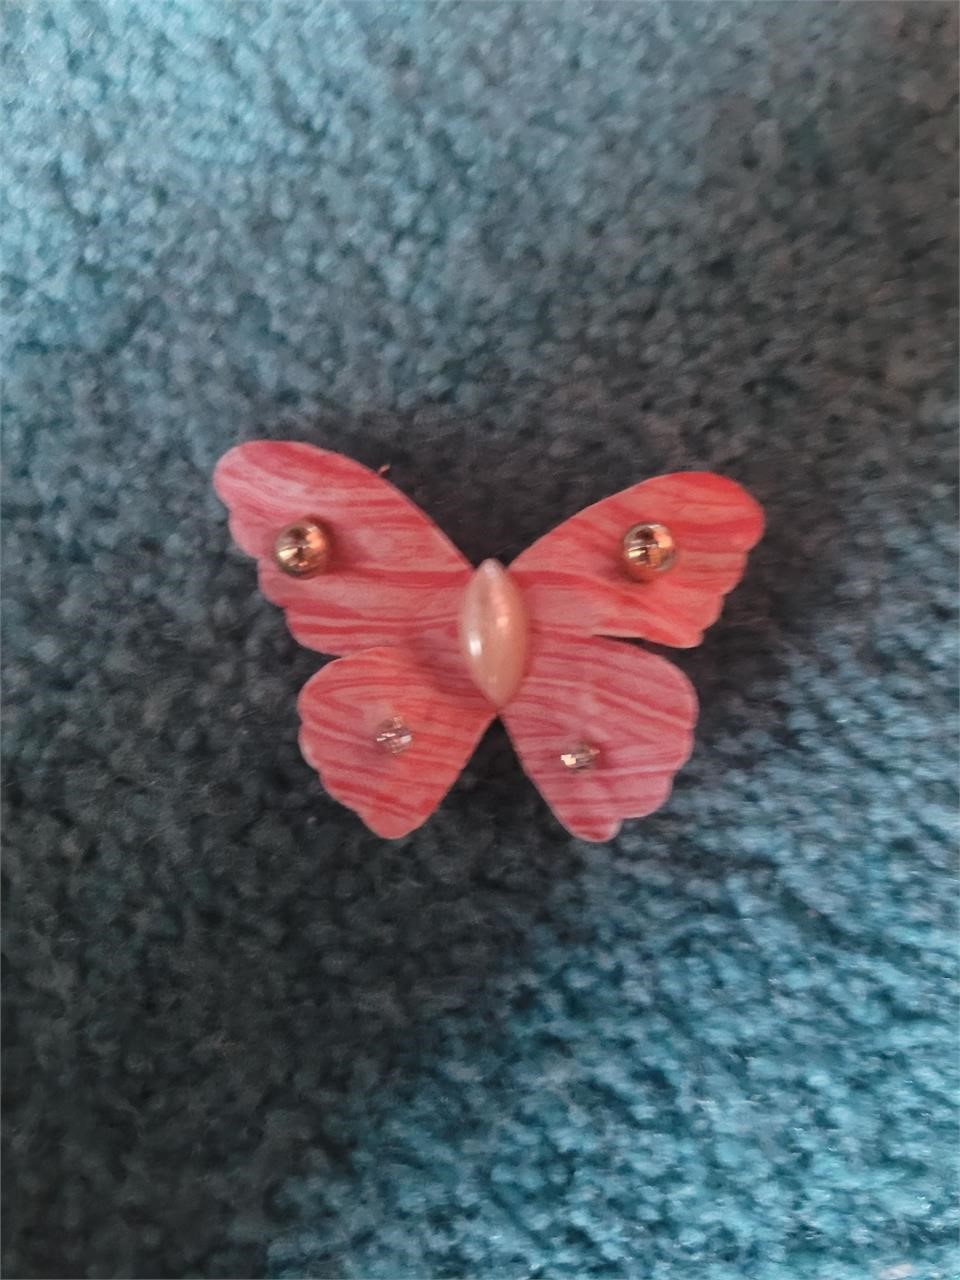 2 sets earrings on butterfly soap